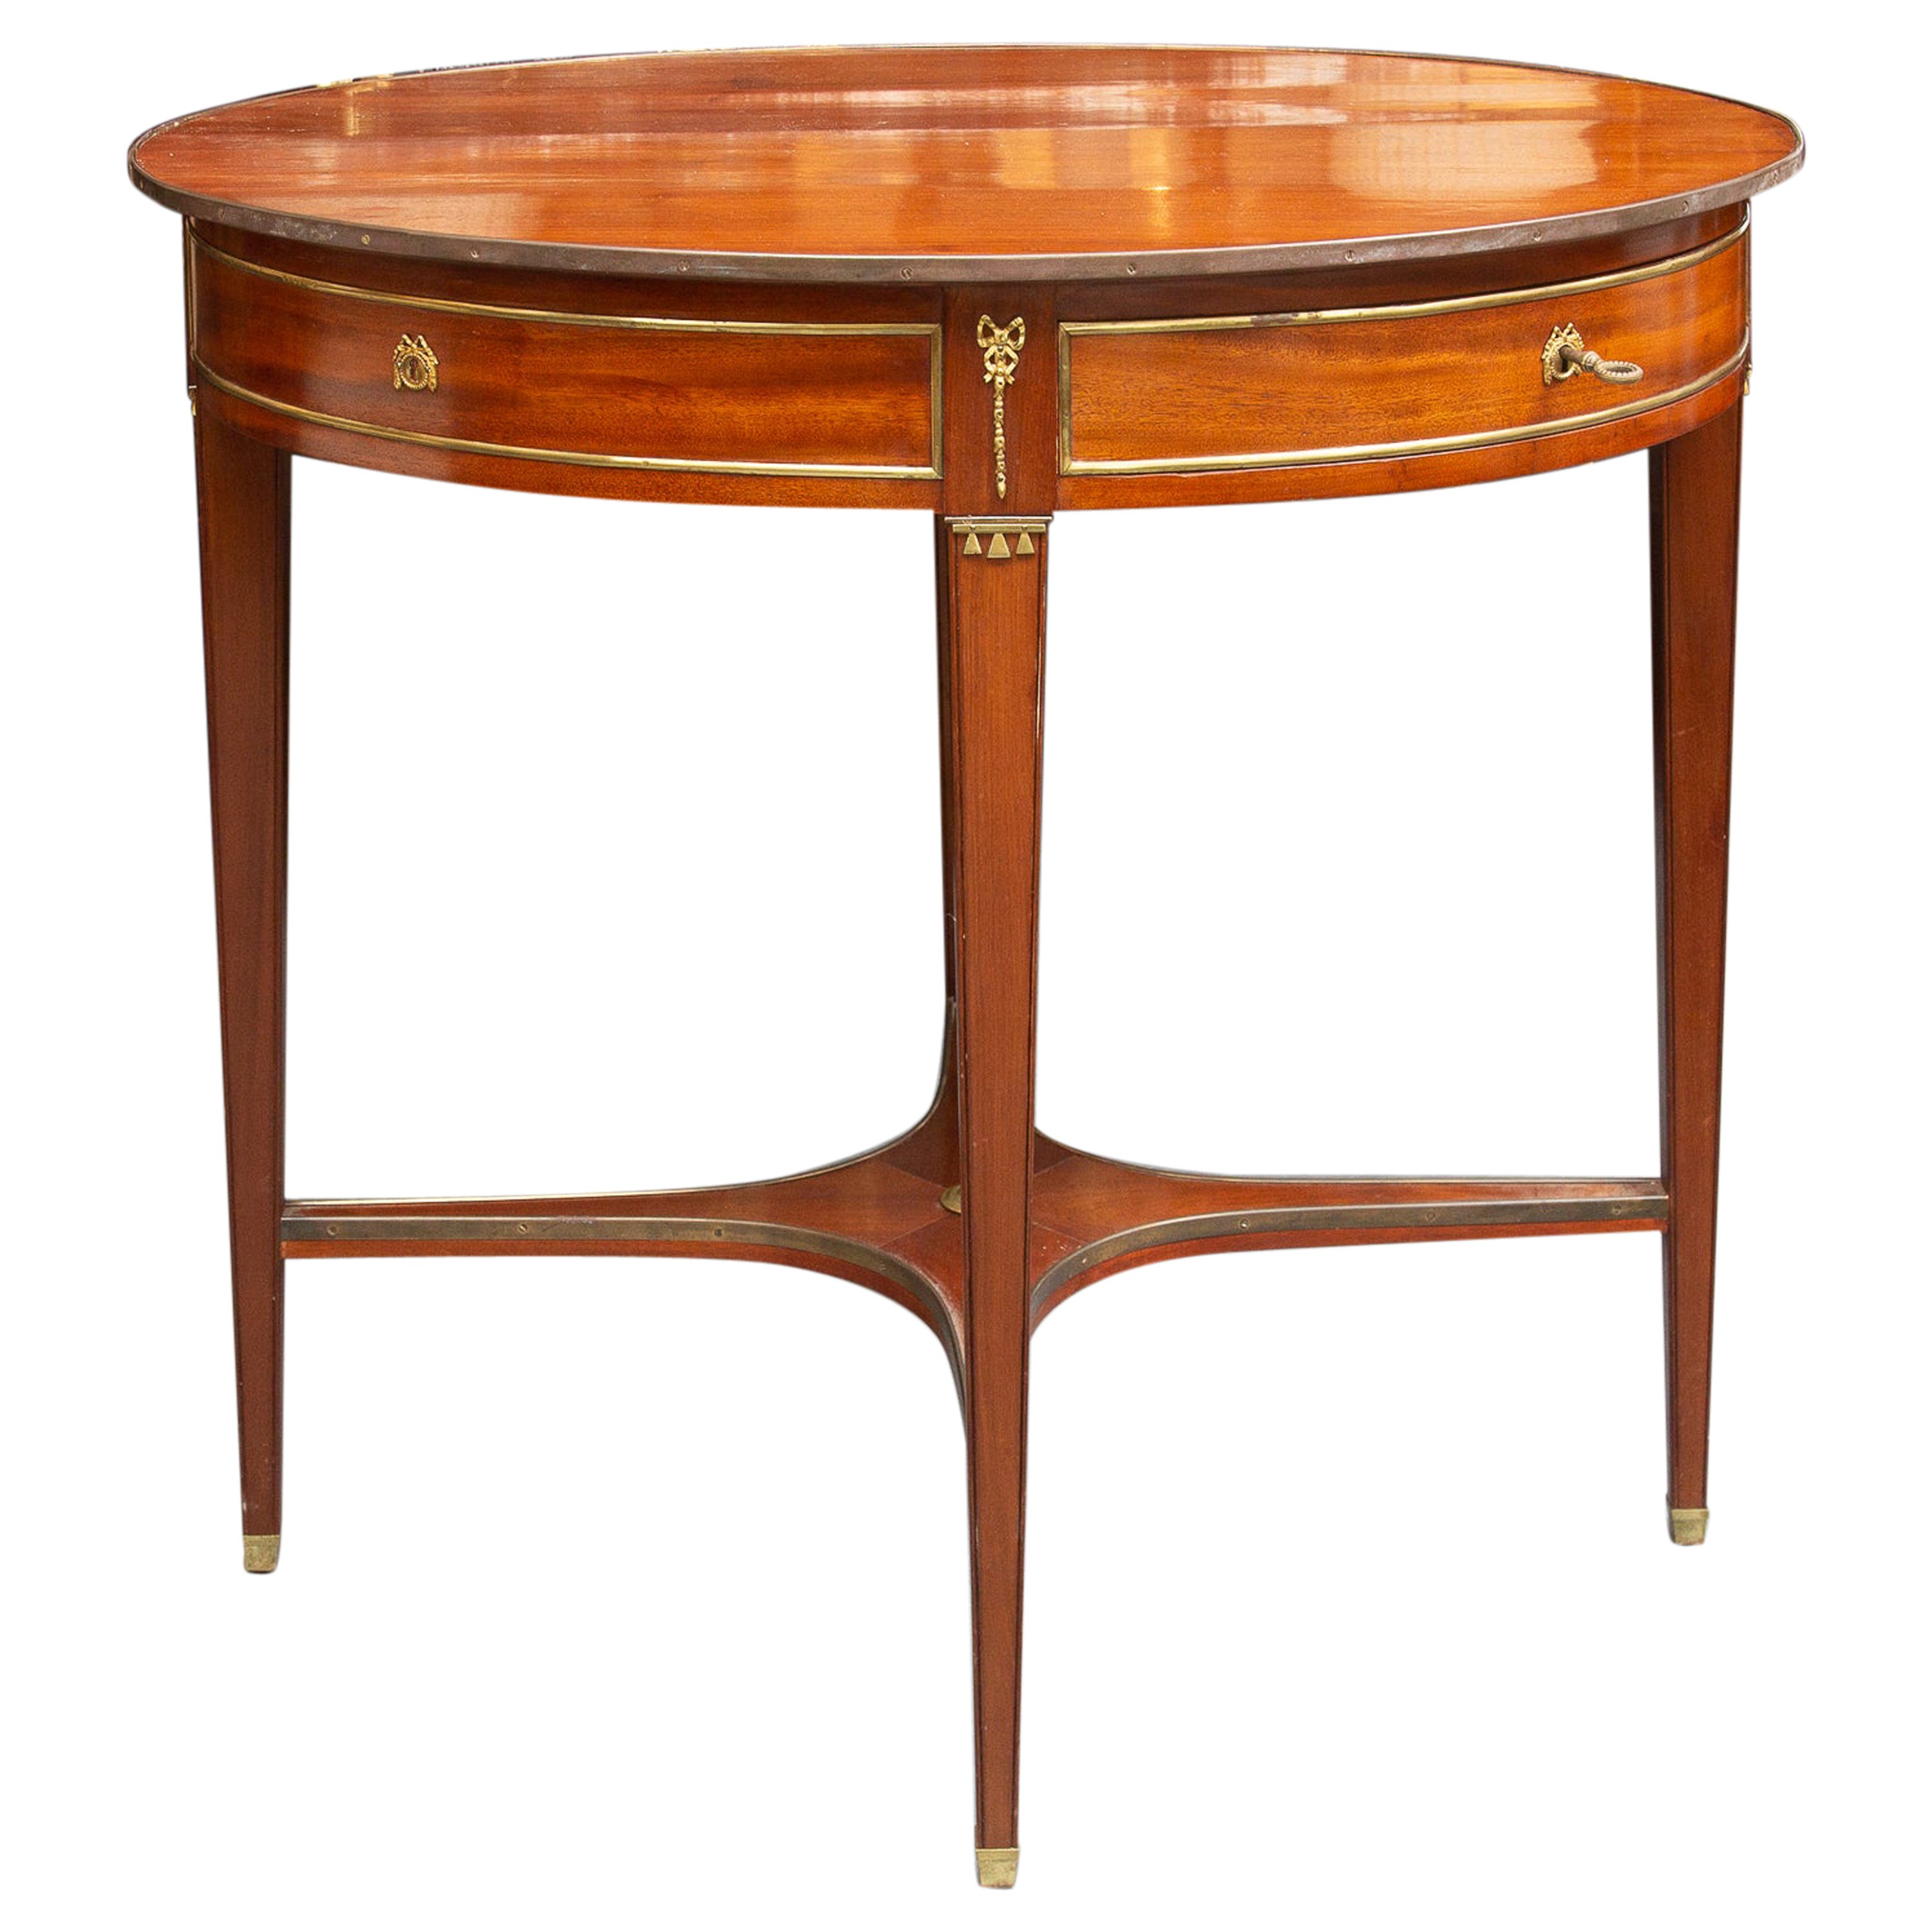 Ovaler Tisch aus Mahagoni mit Messingdekoration